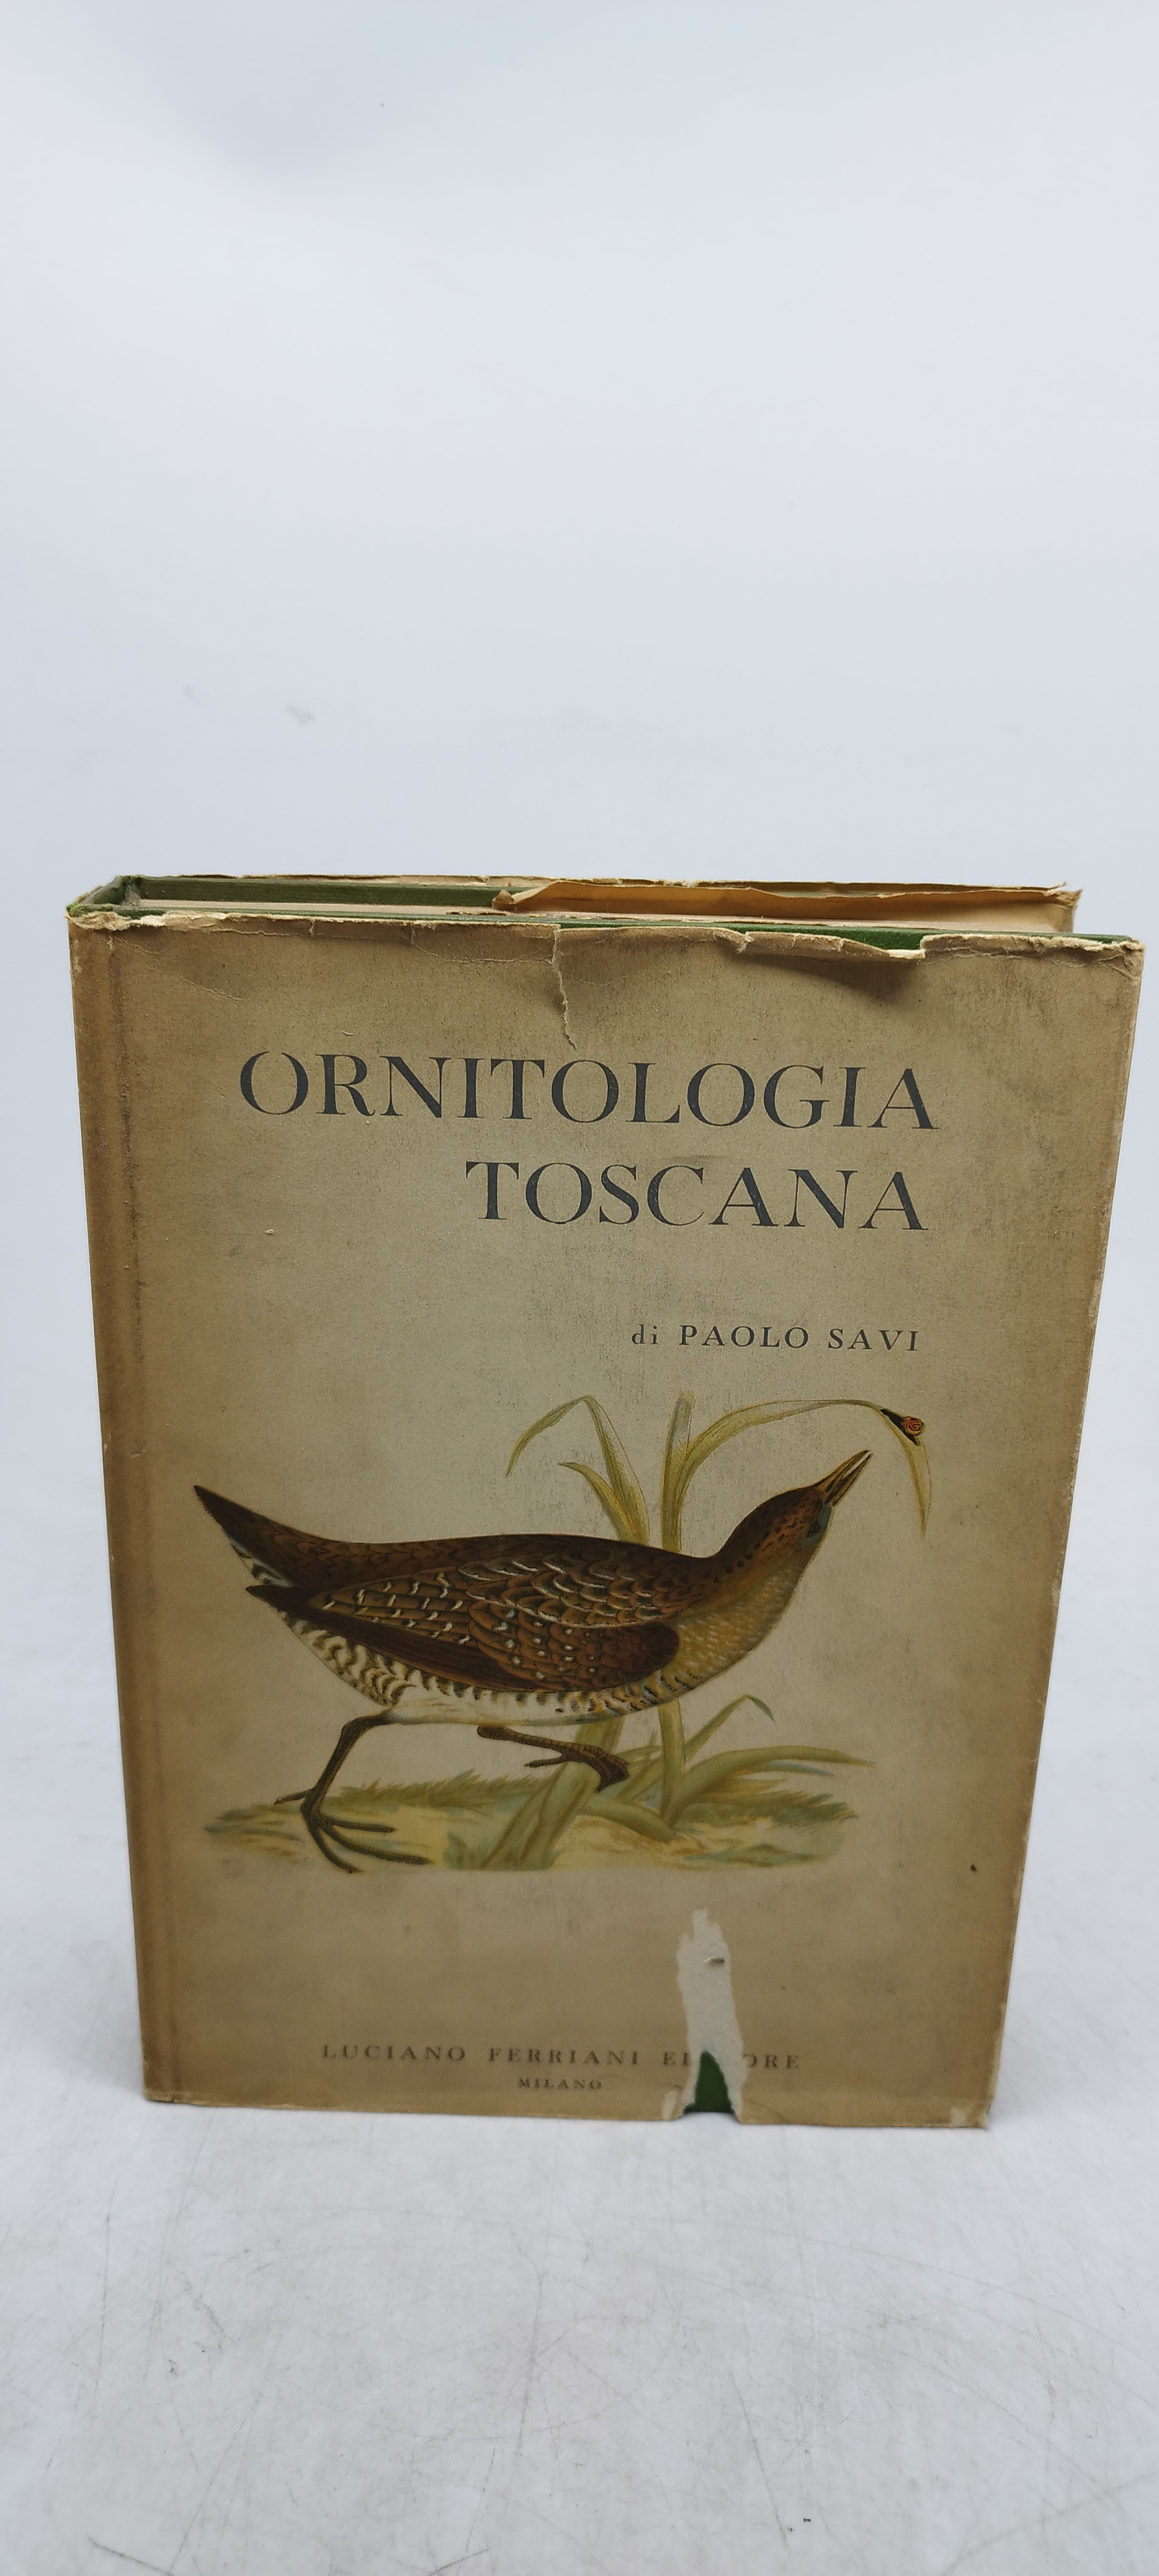 ornitologia toscana di paolo savi volume 2 luciano ferriani